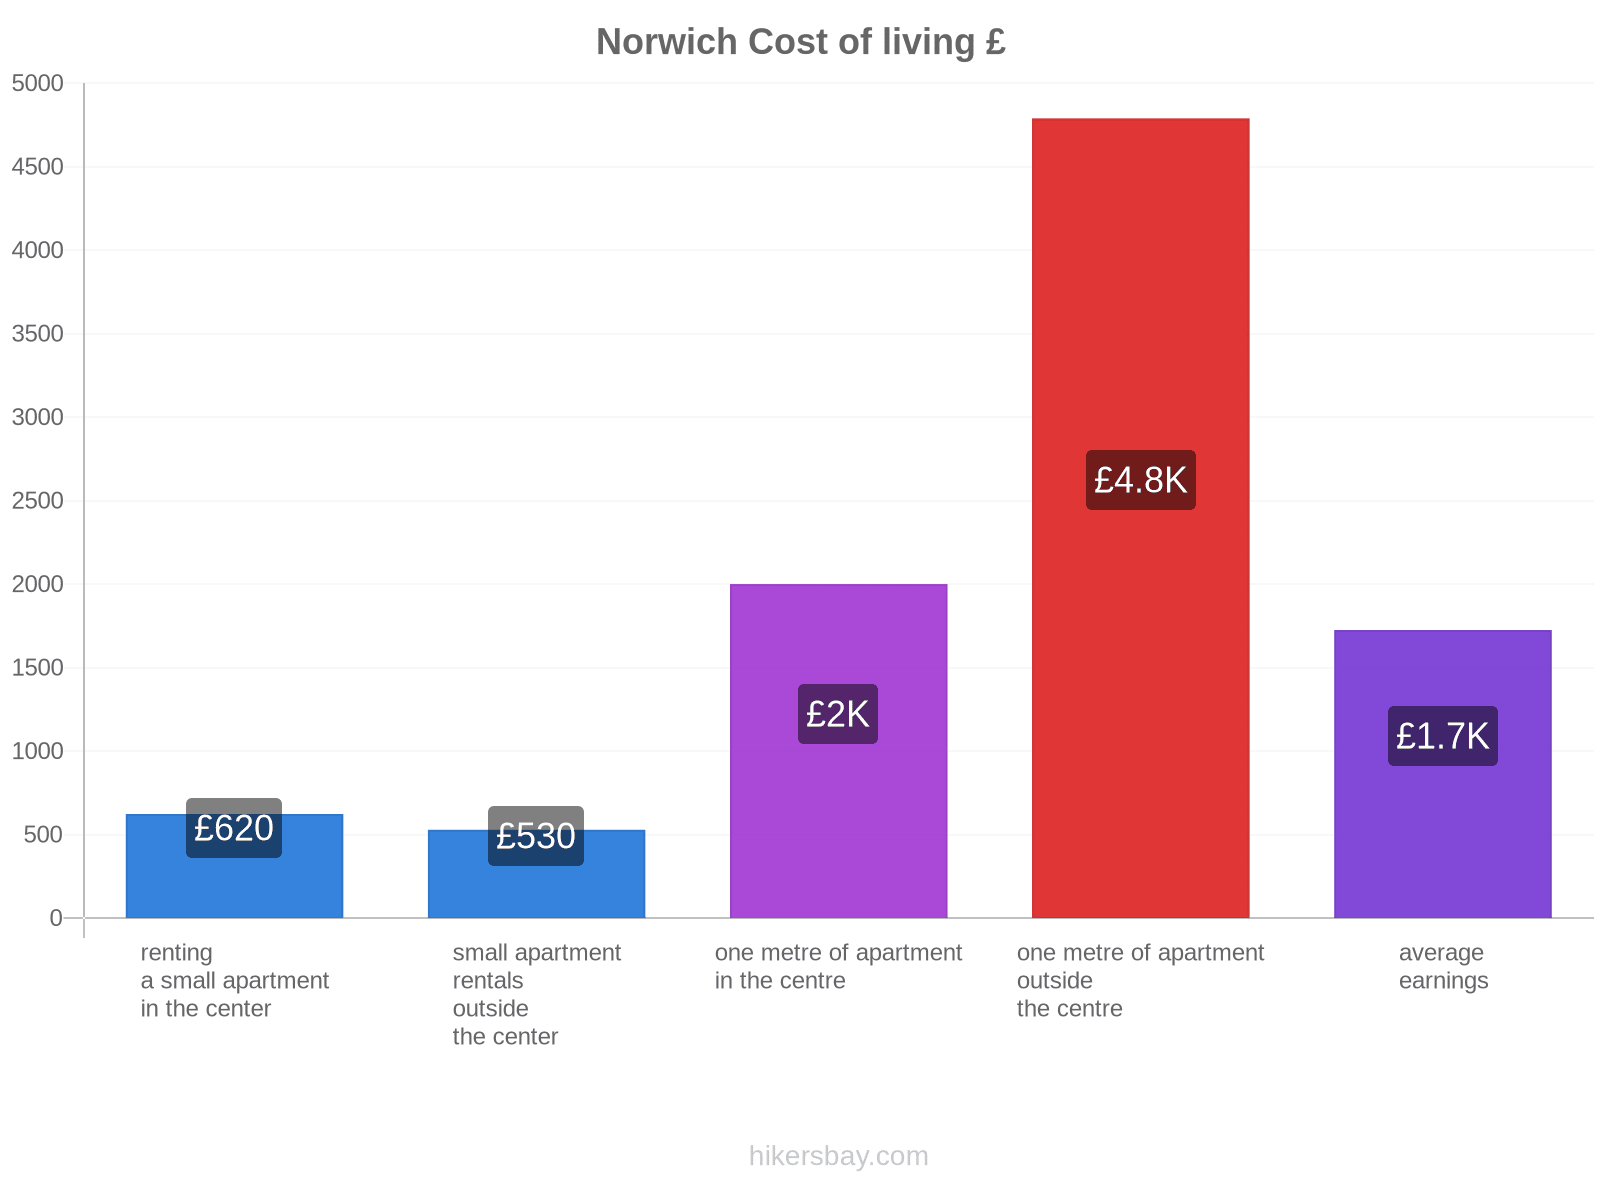 Norwich cost of living hikersbay.com